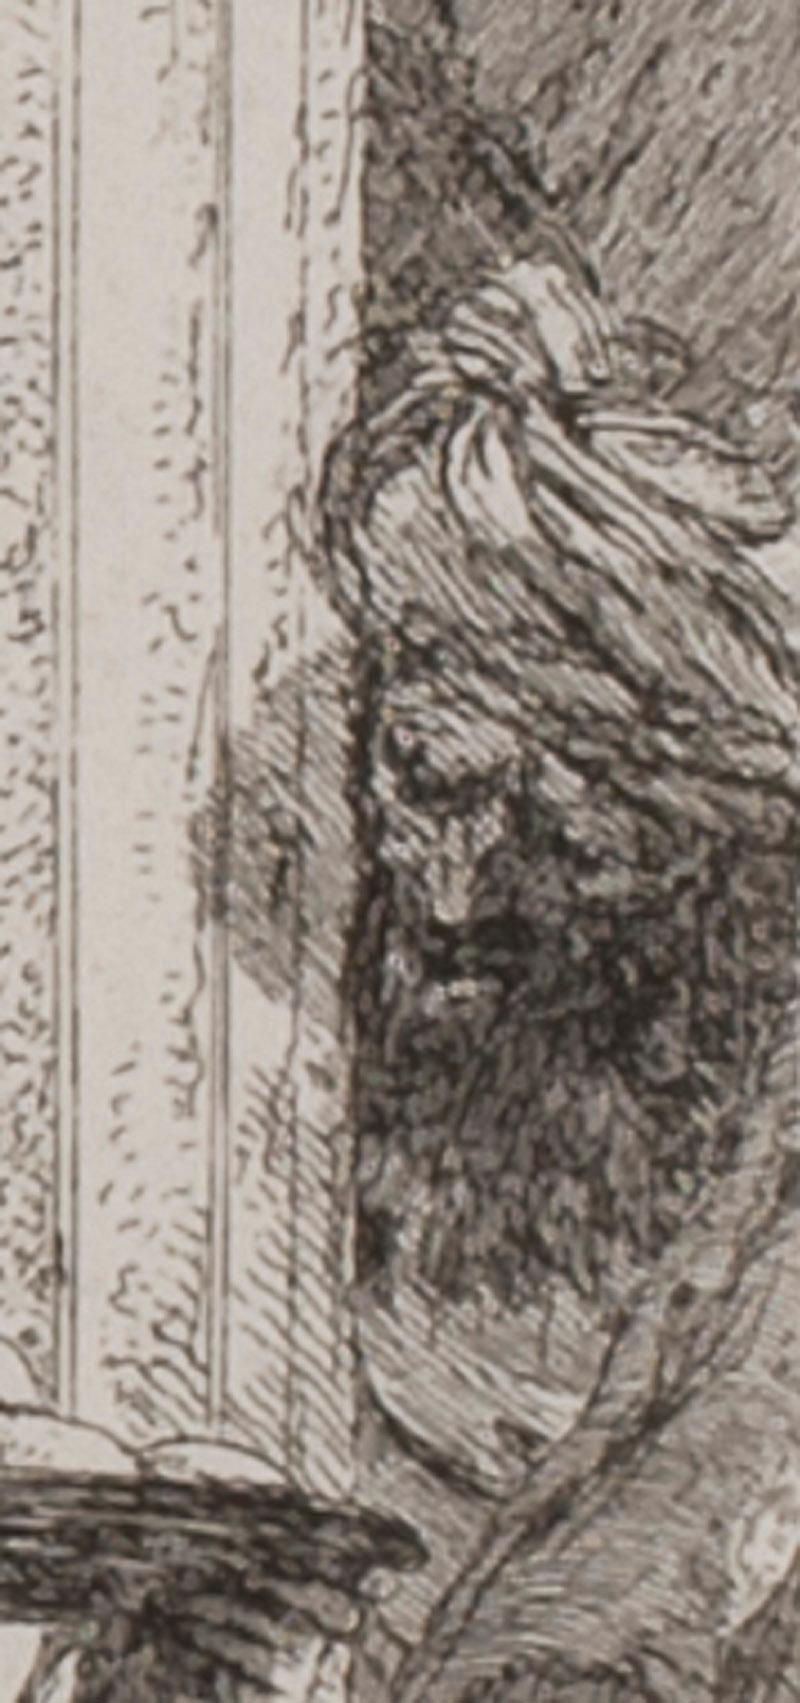 Le martyre de Sainte Agathe
d'après le tableau de son père, Giovanni Battista Tiepolo (voir photo)
Gravure, vers 1780
Signature : non signée 
Filigrane : Lettre A (similaire à Bromberg 43) c. 1750
Provenance :  Paul Prouté SA, Paris 
Références :